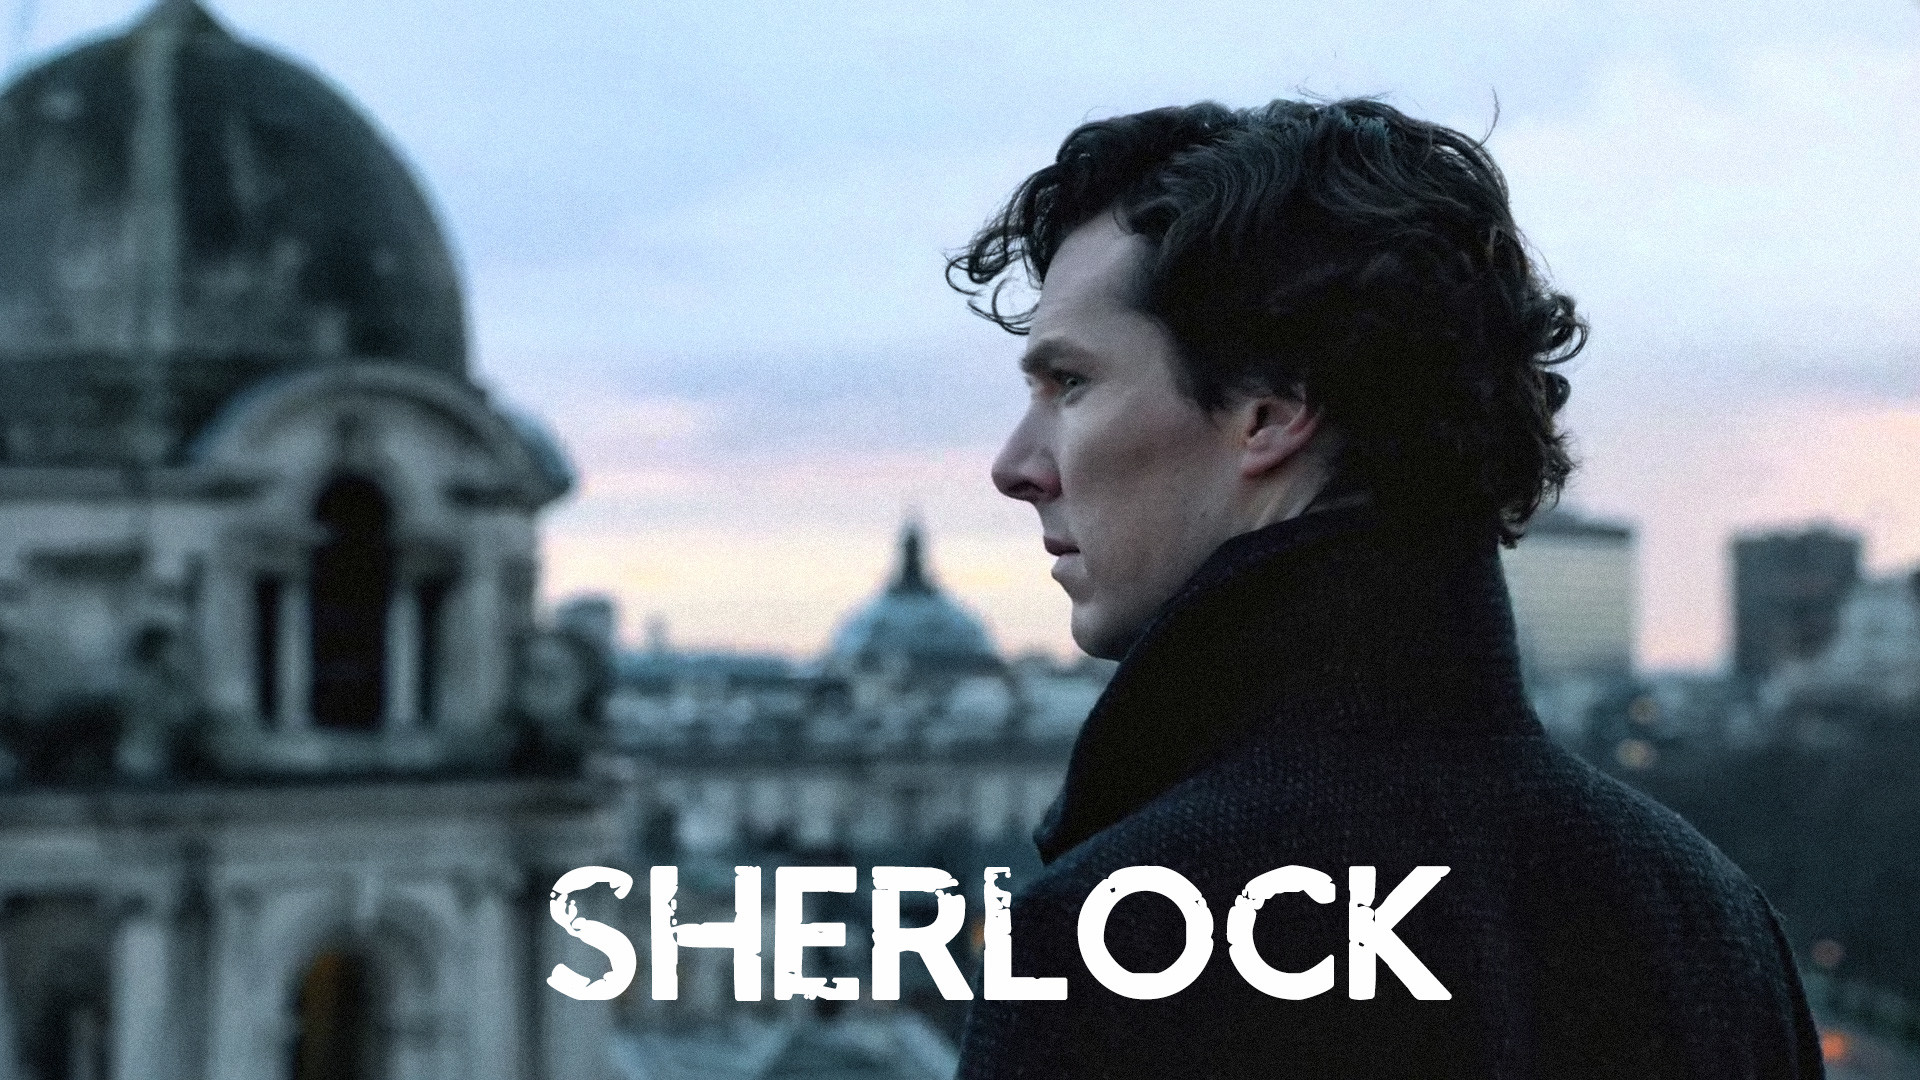 271 Sherlock Wallpaper Images, Stock Photos & Vectors | Shutterstock